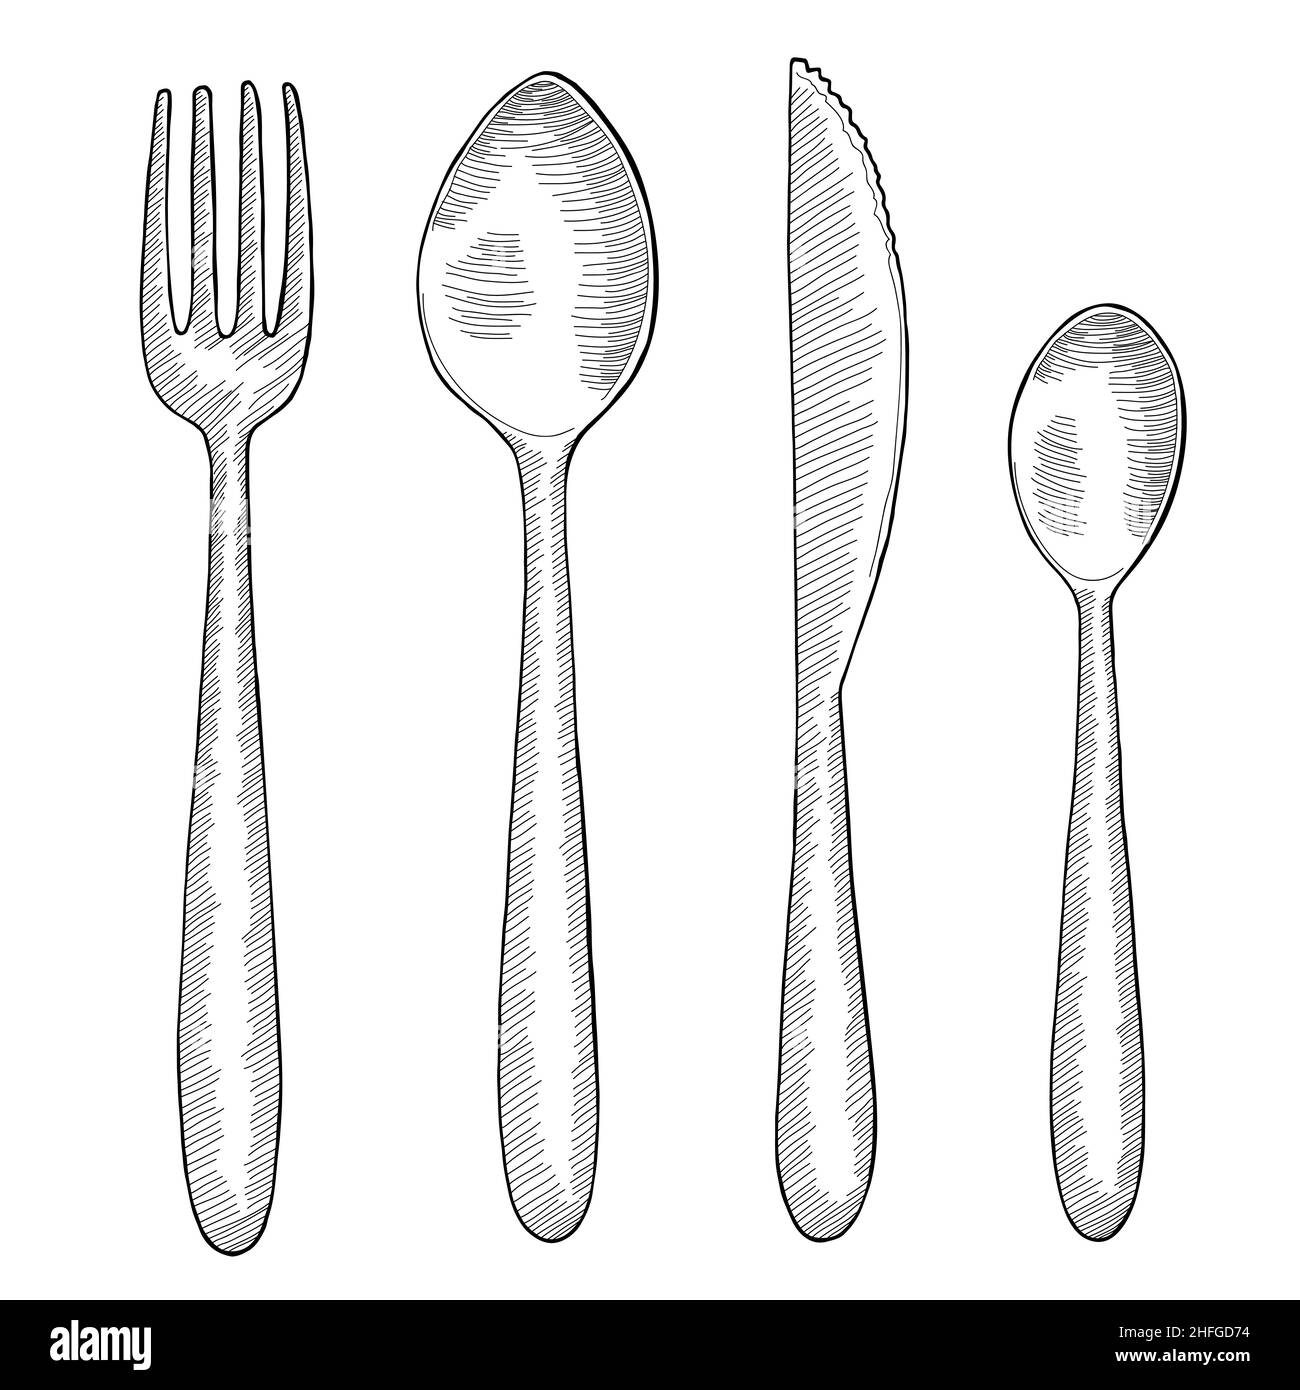 Fourchette cuillère ensemble de couteaux graphique noir blanc isolé dessin illustration vecteur Illustration de Vecteur